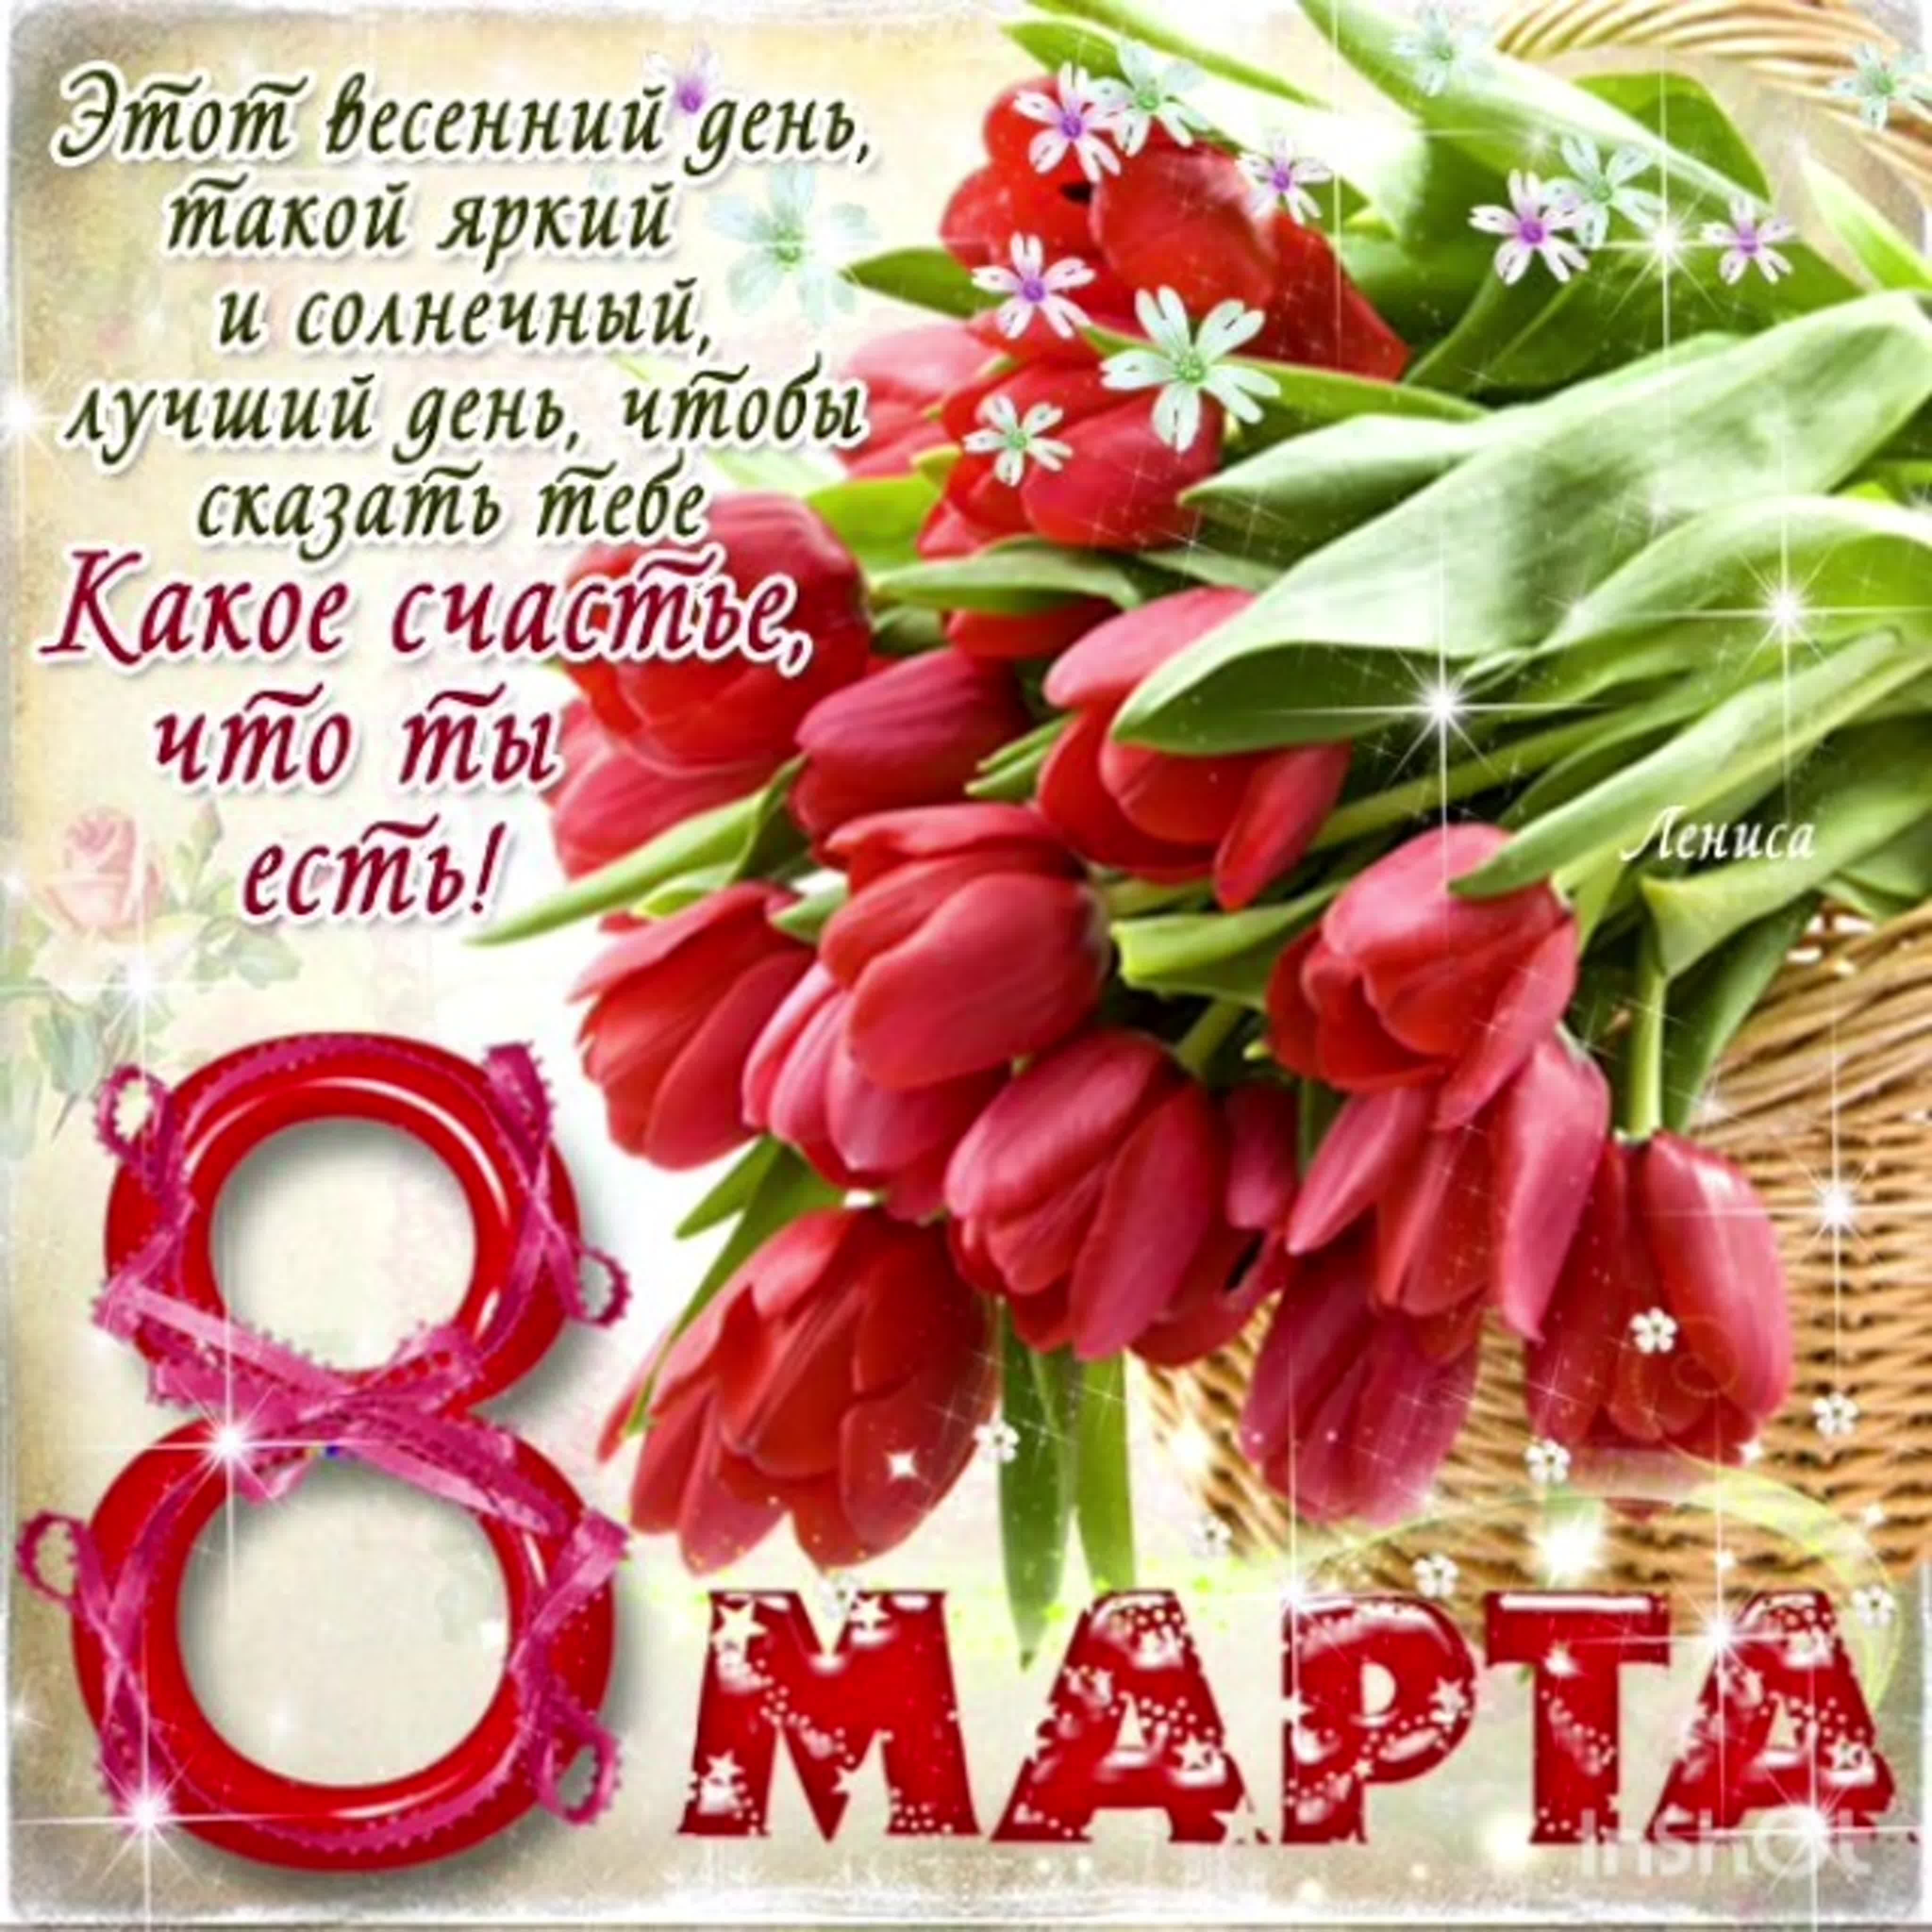 Гульнара с днем рождения открытки со словами на татарском языке